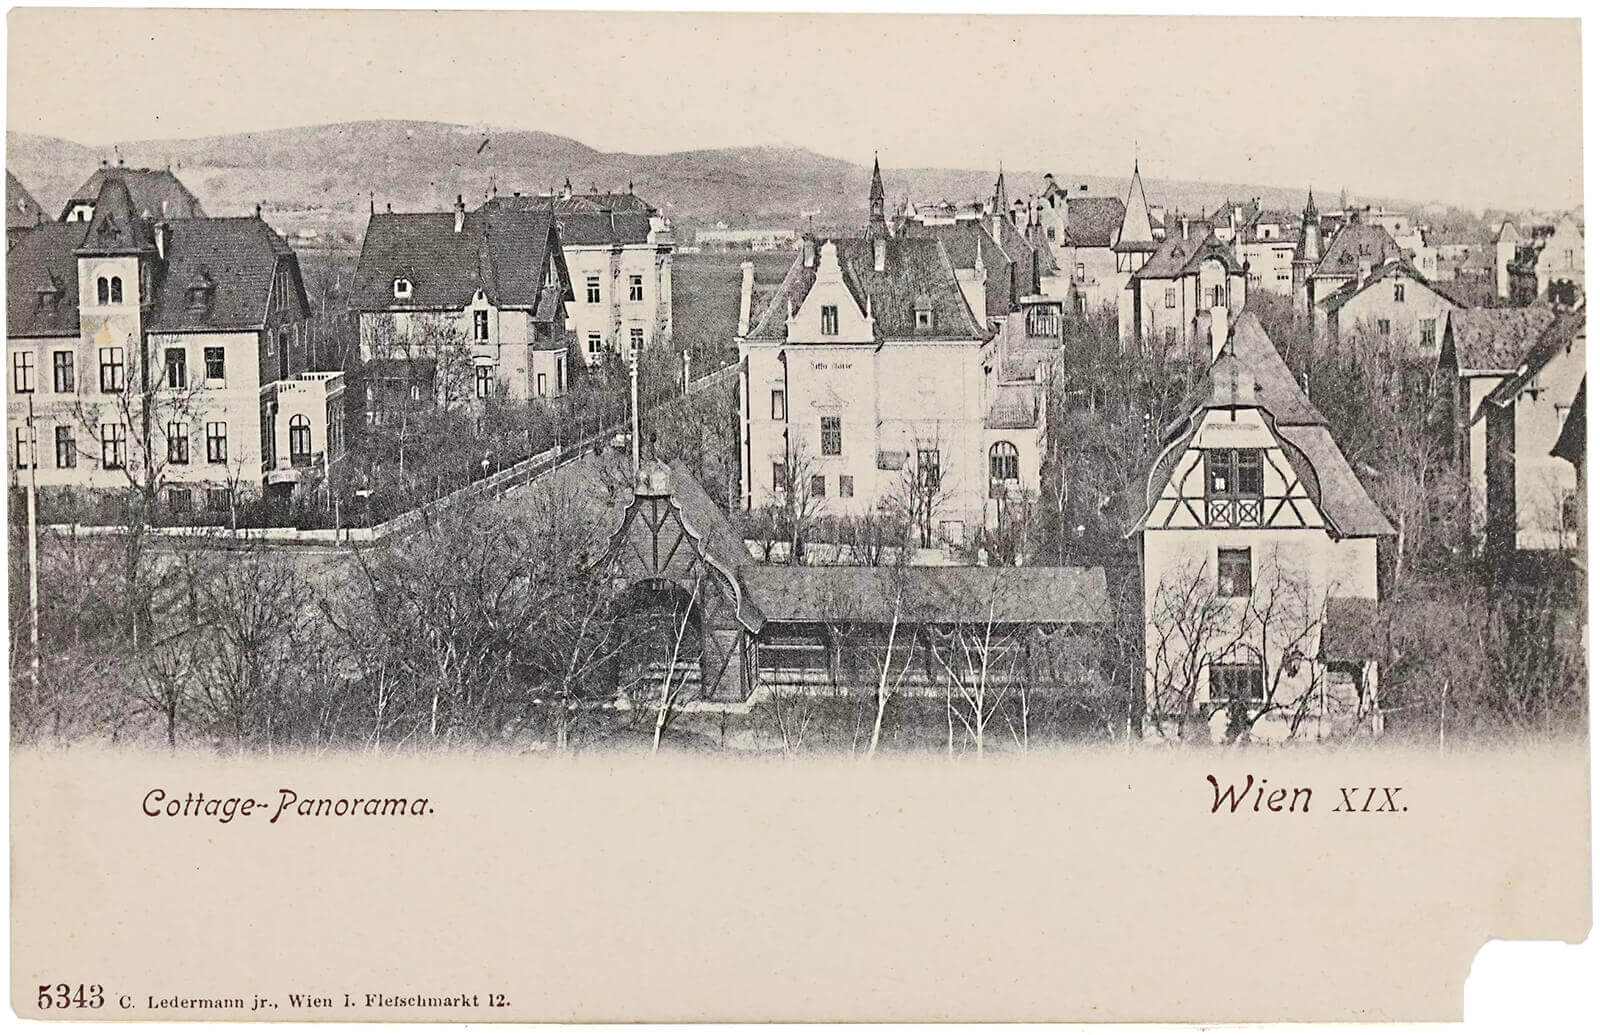 Panoramablick auf die Cottage-Anlage in Wien, Ansichtskarte, um 1900, Wien Museum. Im Vordergrund ist die Kegelbahn der Villa Gutmann zu sehen, über die in einem früheren Magazin-Beitrag über Kegeln in Wien berichtet wurde. 